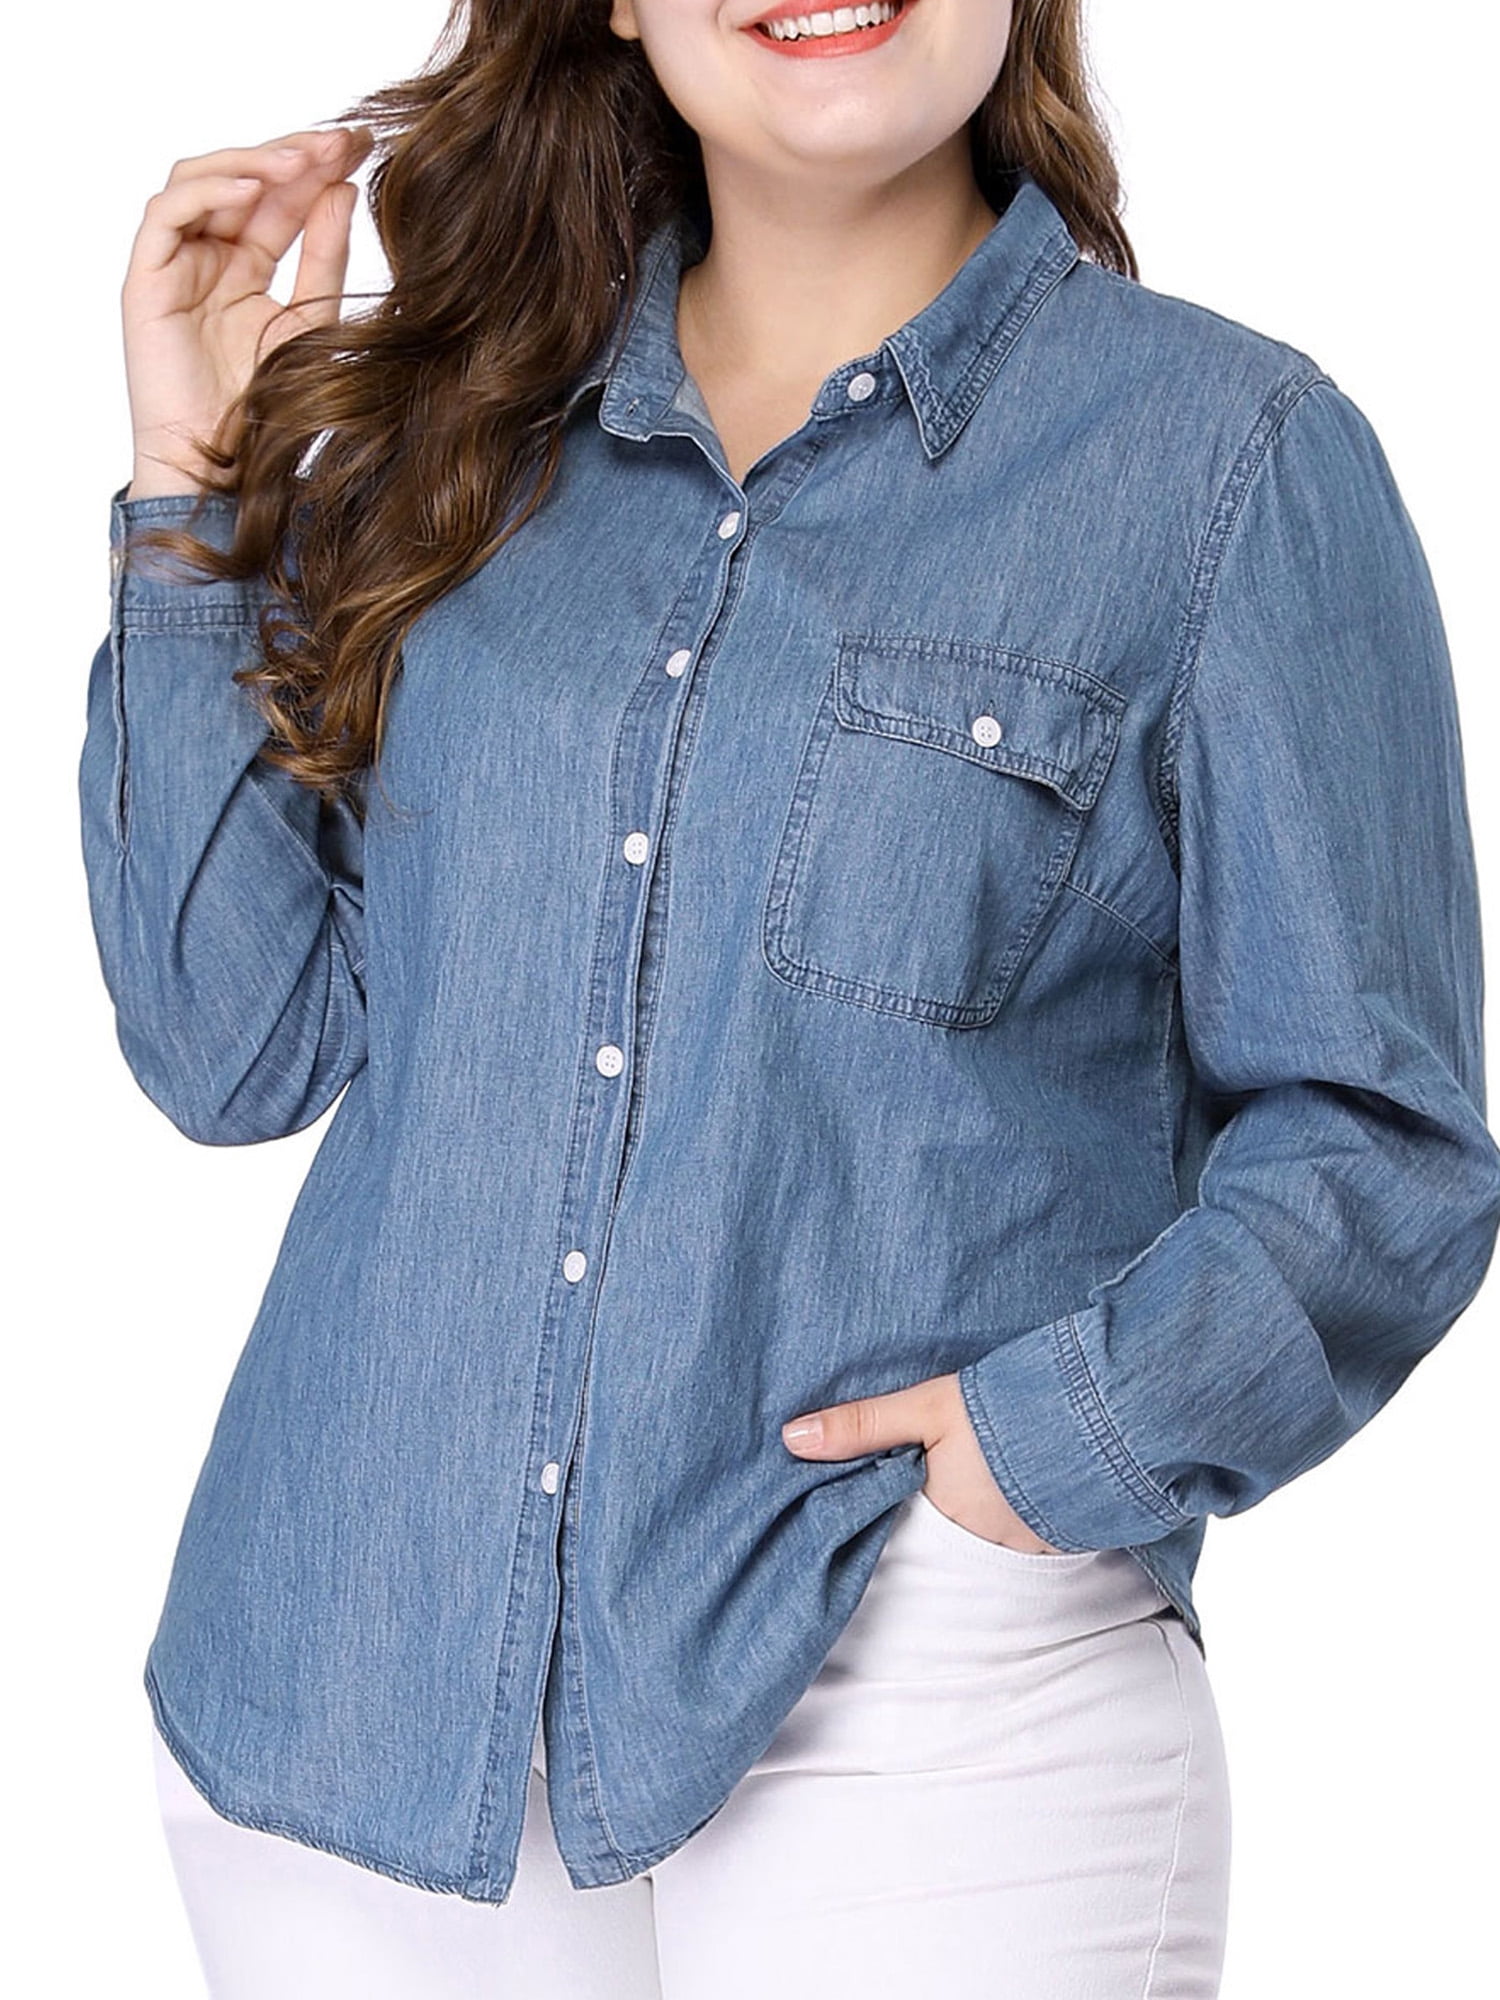 Unique Bargains - Women's Plus Size Chest Pocket Denim Chambray Shirt ...